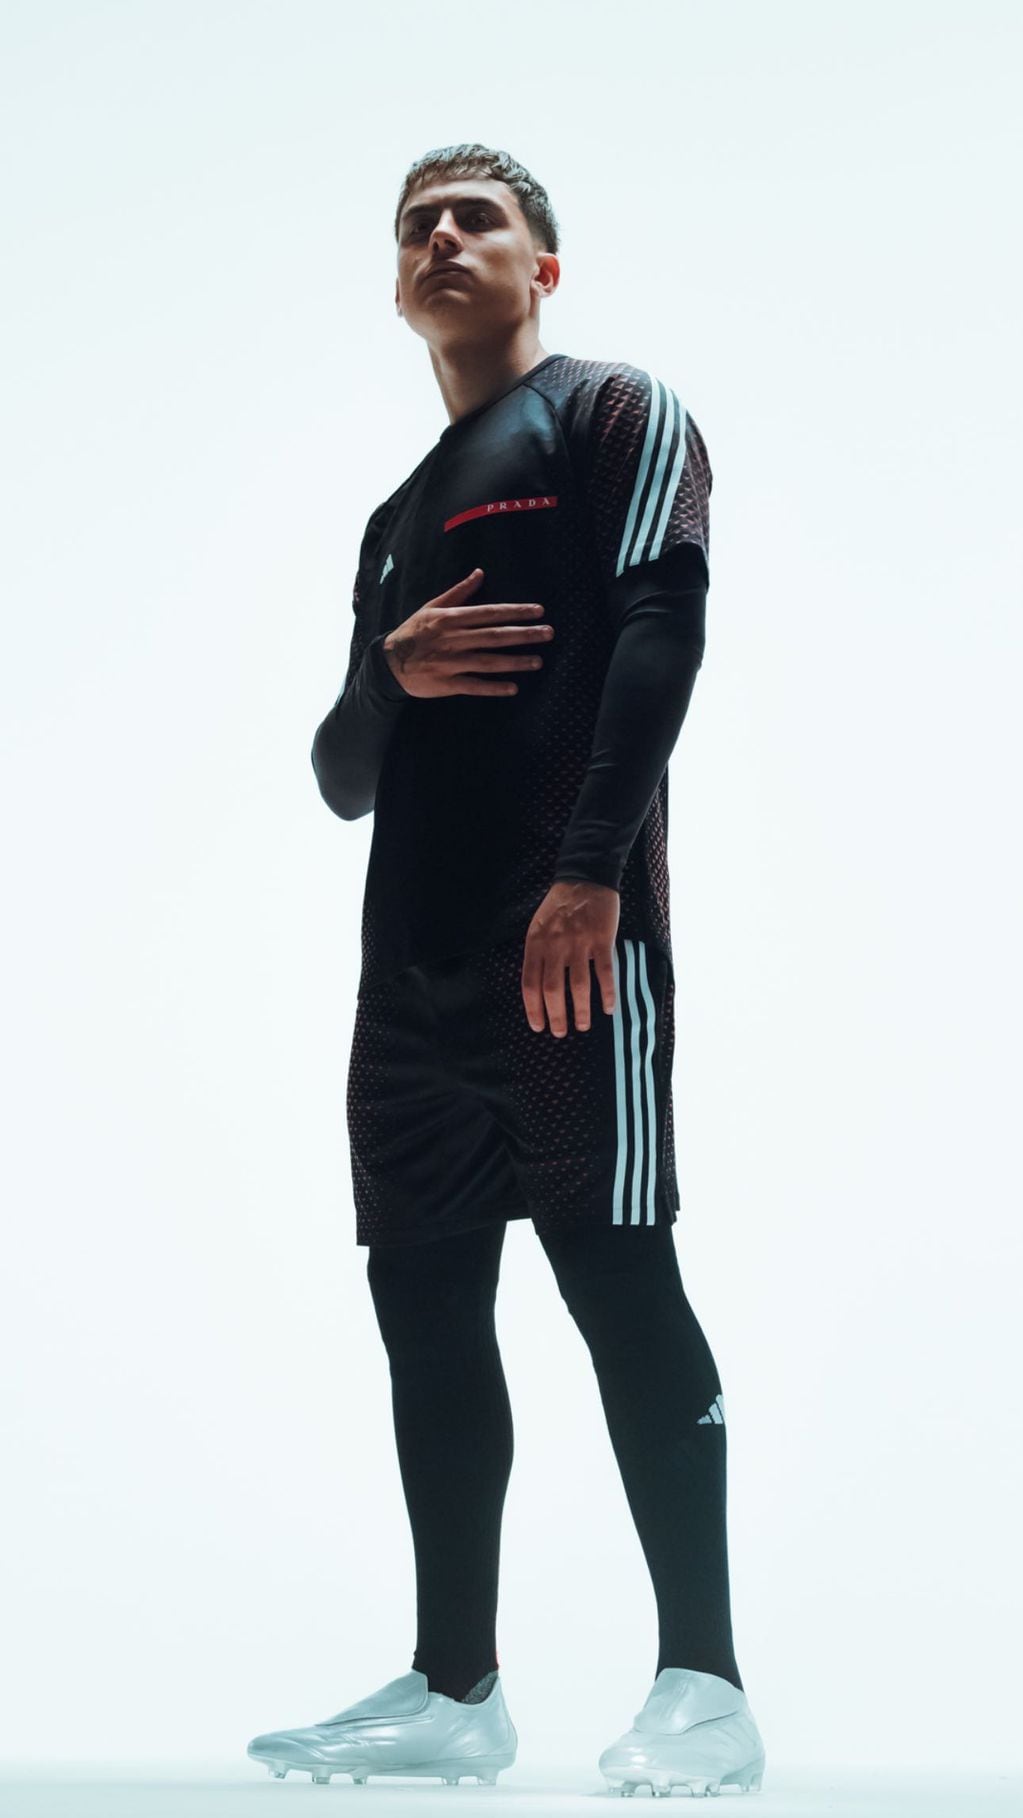 El cordobés fue elegido para representar a la nueva colección de Prada y Adidas.